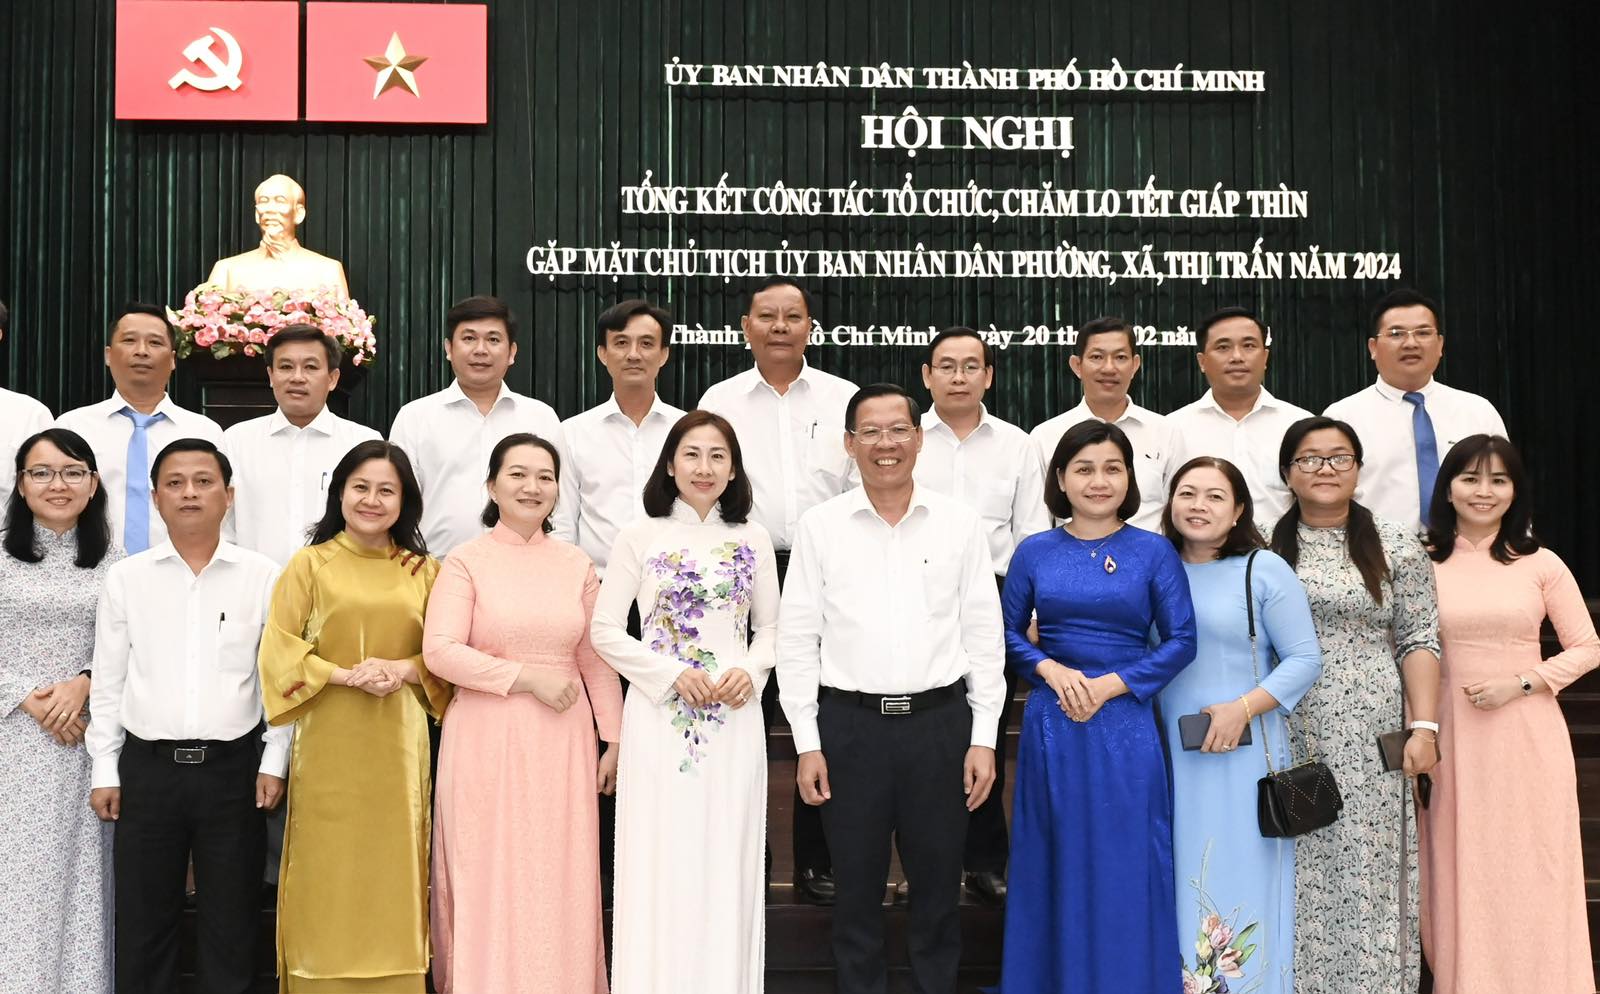 Chủ tịch UBND TP. Hồ Chí Minh Phan Văn Mãi cùng các đại biểu dự hội nghị (Ảnh: Việt Dũng).